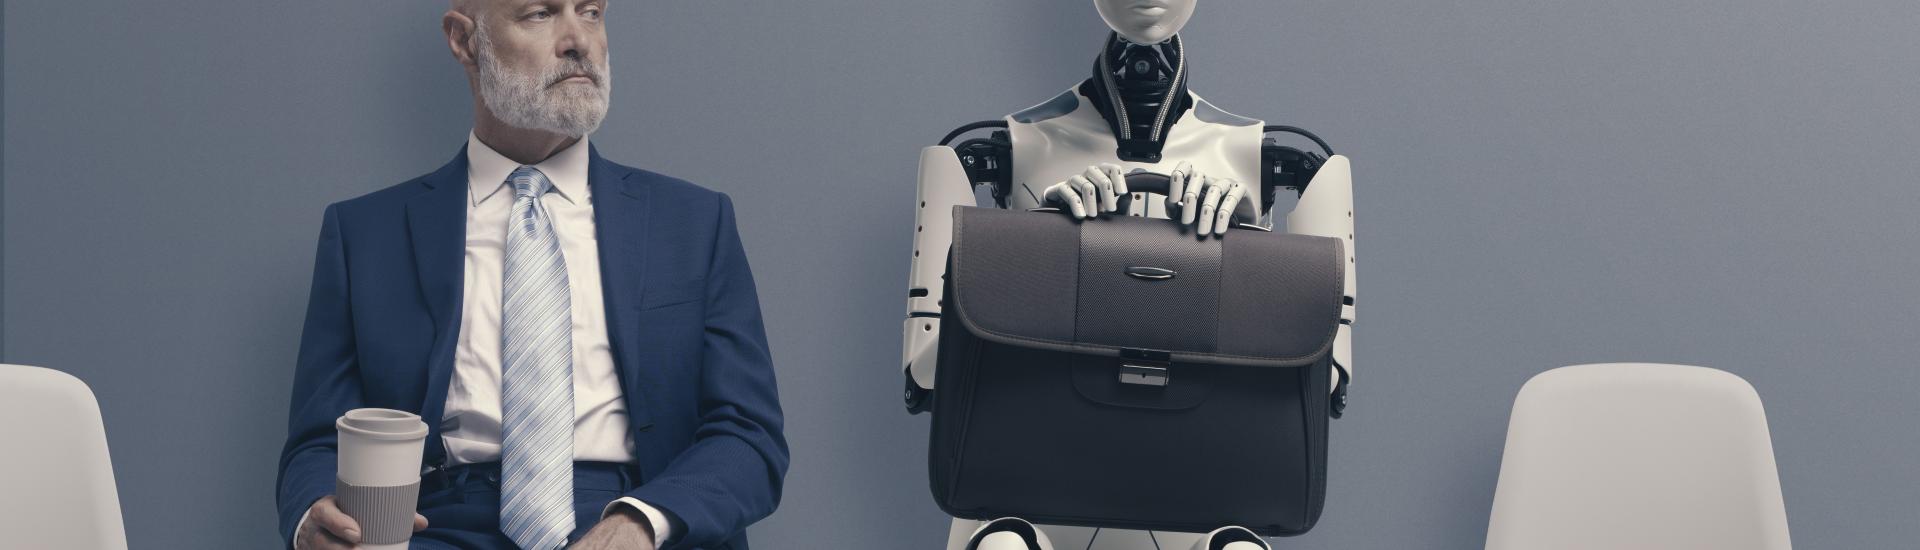 KI Künstliche Intelligenz transformiert die Arbeitswelt, Podcast mit Rechtsanwalt Hellmann